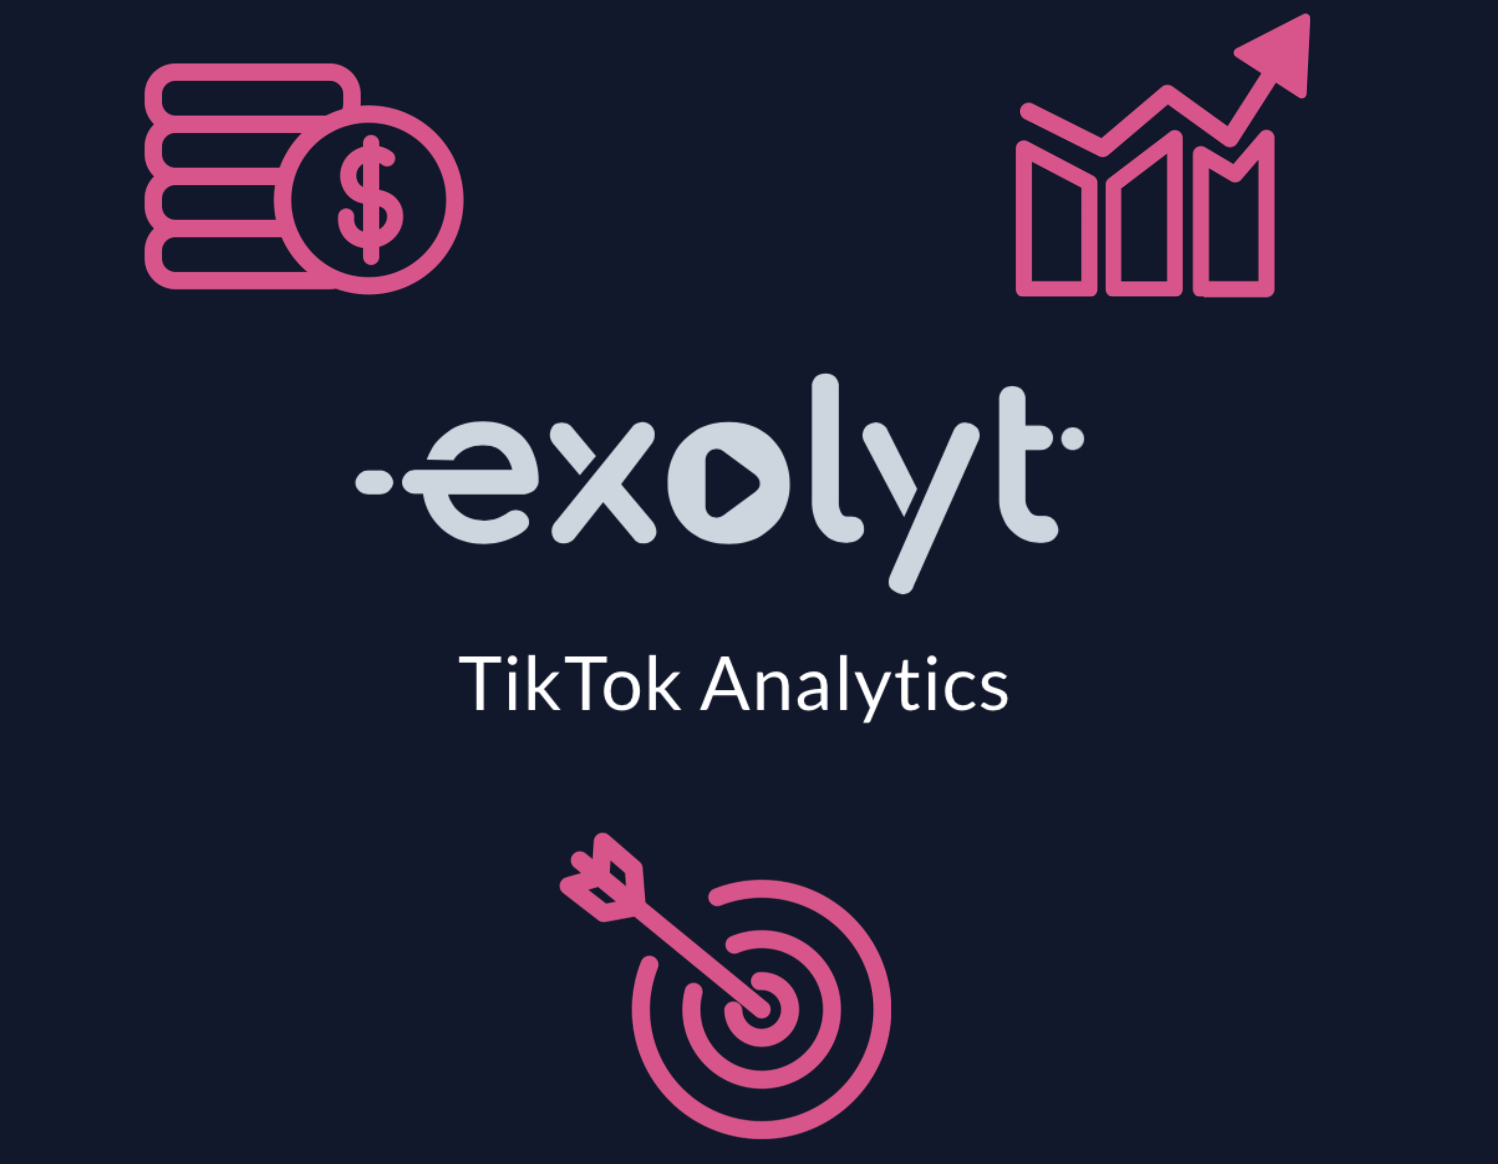 Почему медиа-агентствам стоит использовать Exolyt для аналитики TikTok